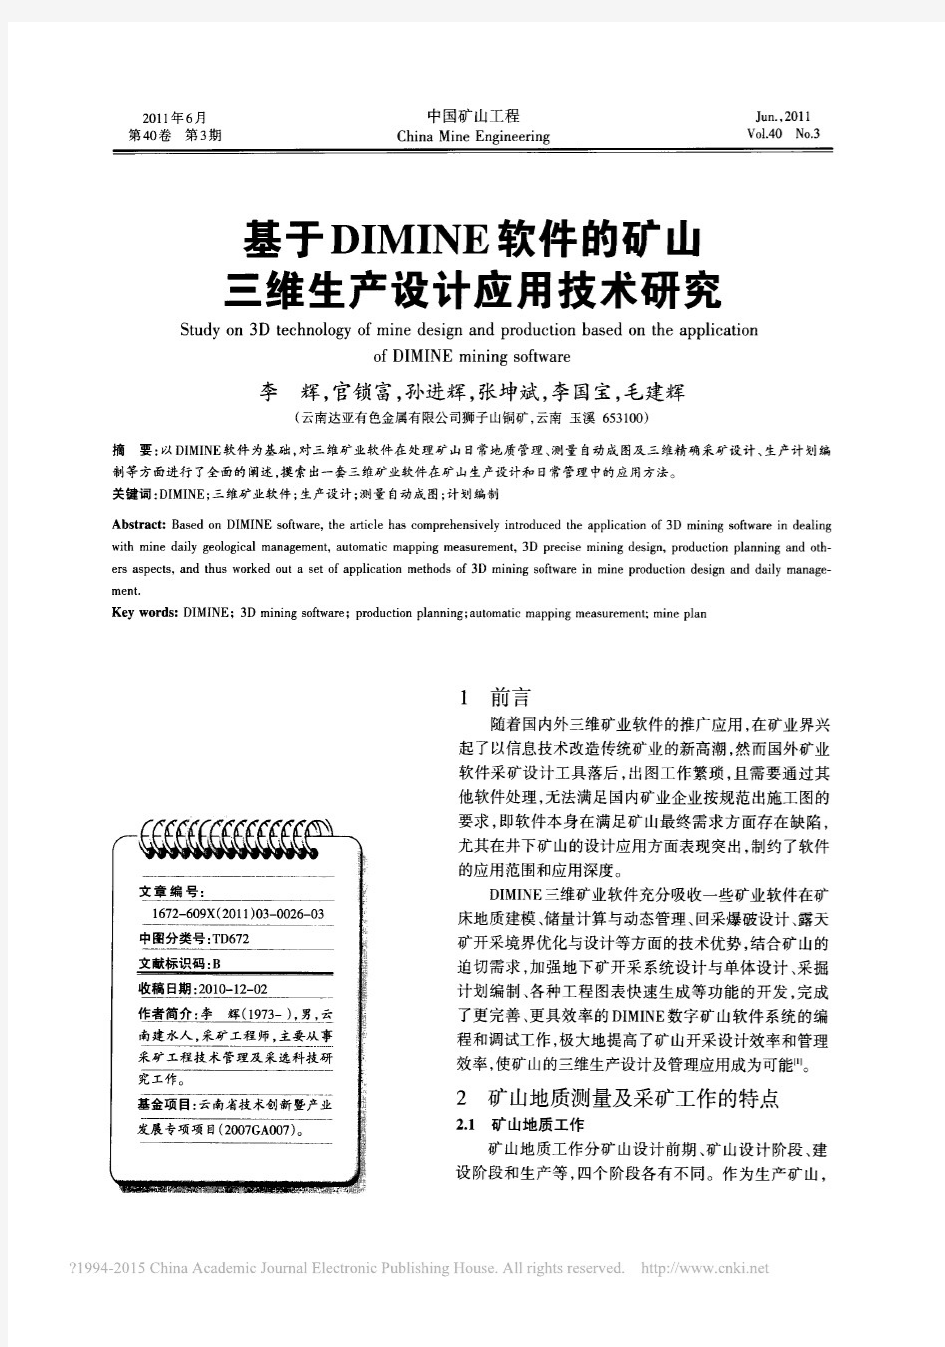 基于DIMINE软件的矿山三维生产设计应用技术研究_李辉